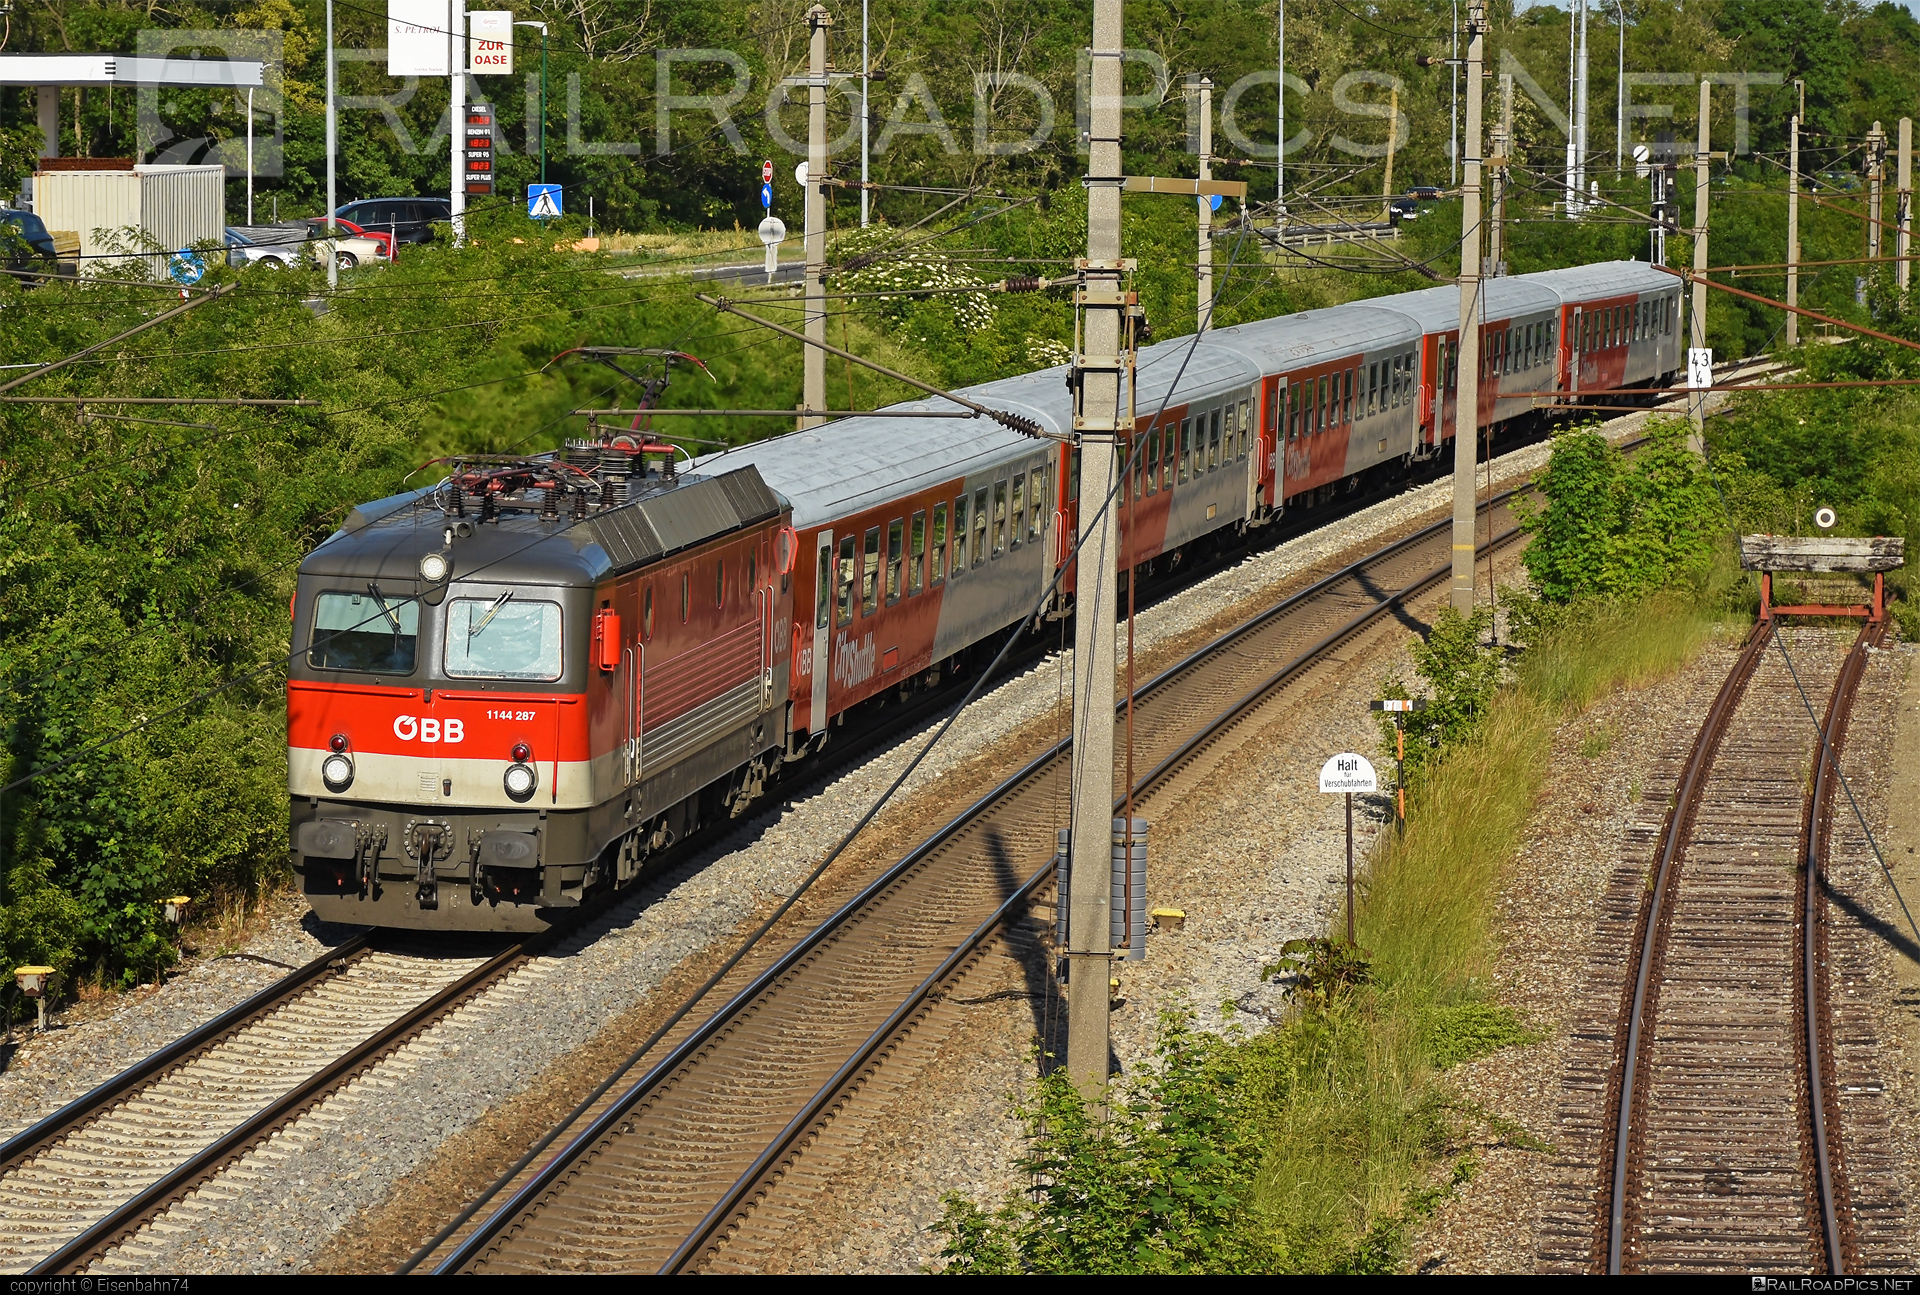 SGP 1144 - 1144 287 operated by Österreichische Bundesbahnen #cityshuttle #obb #obb1144 #obbClass1144 #osterreichischebundesbahnen #sgp #sgp1144 #simmeringgrazpauker